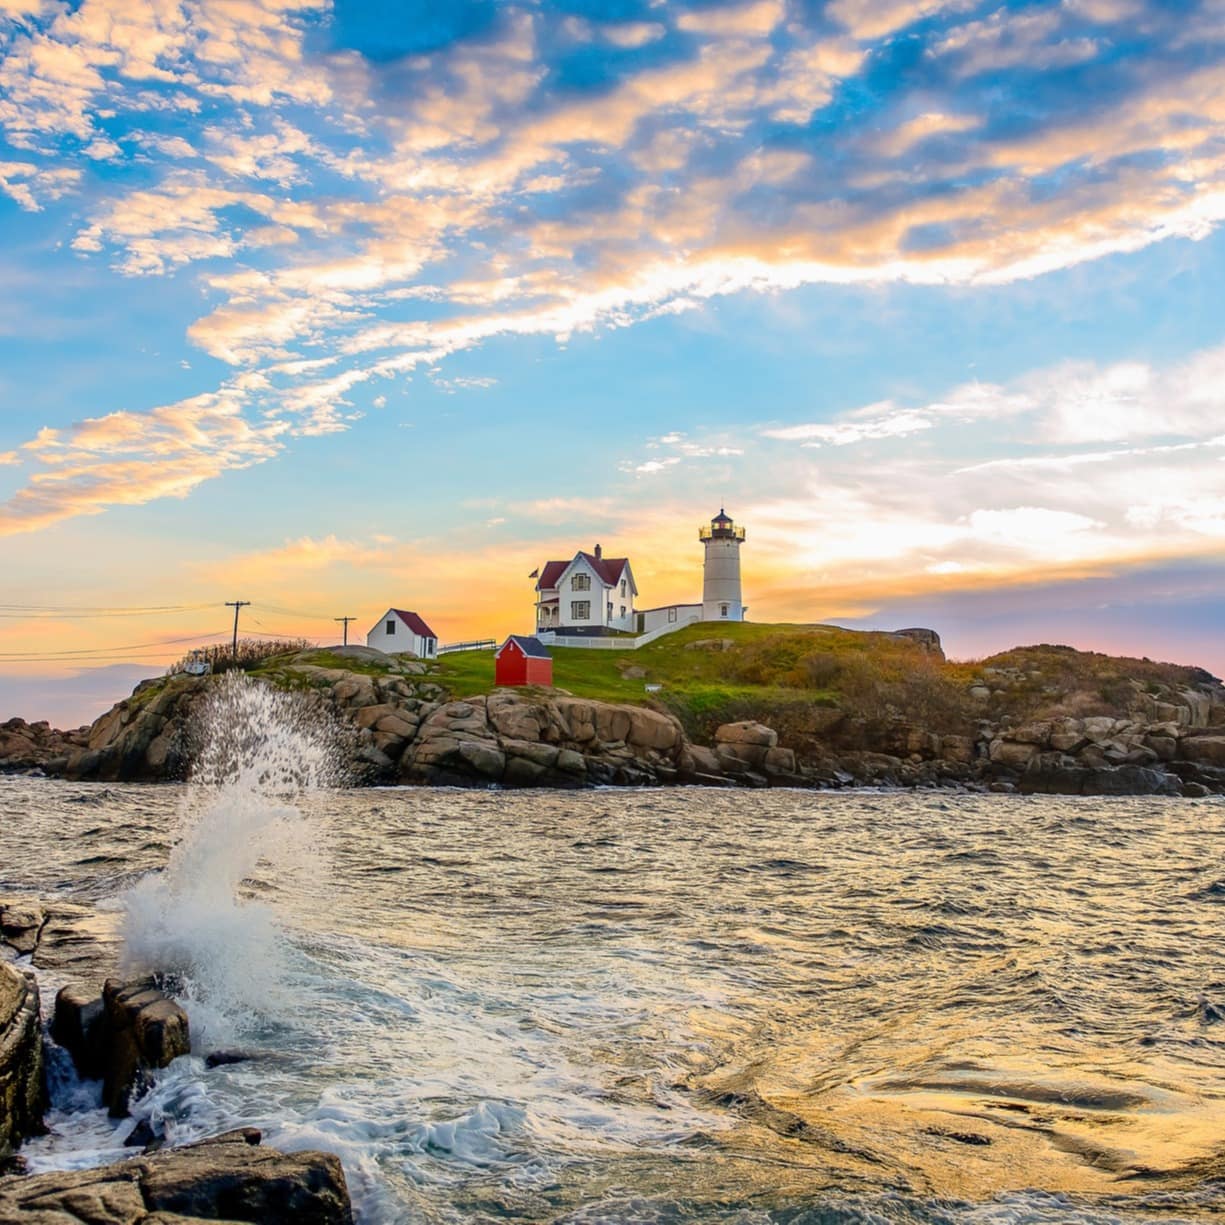 A whitewashed Maine beach house and a lighthouse on a rocky headland